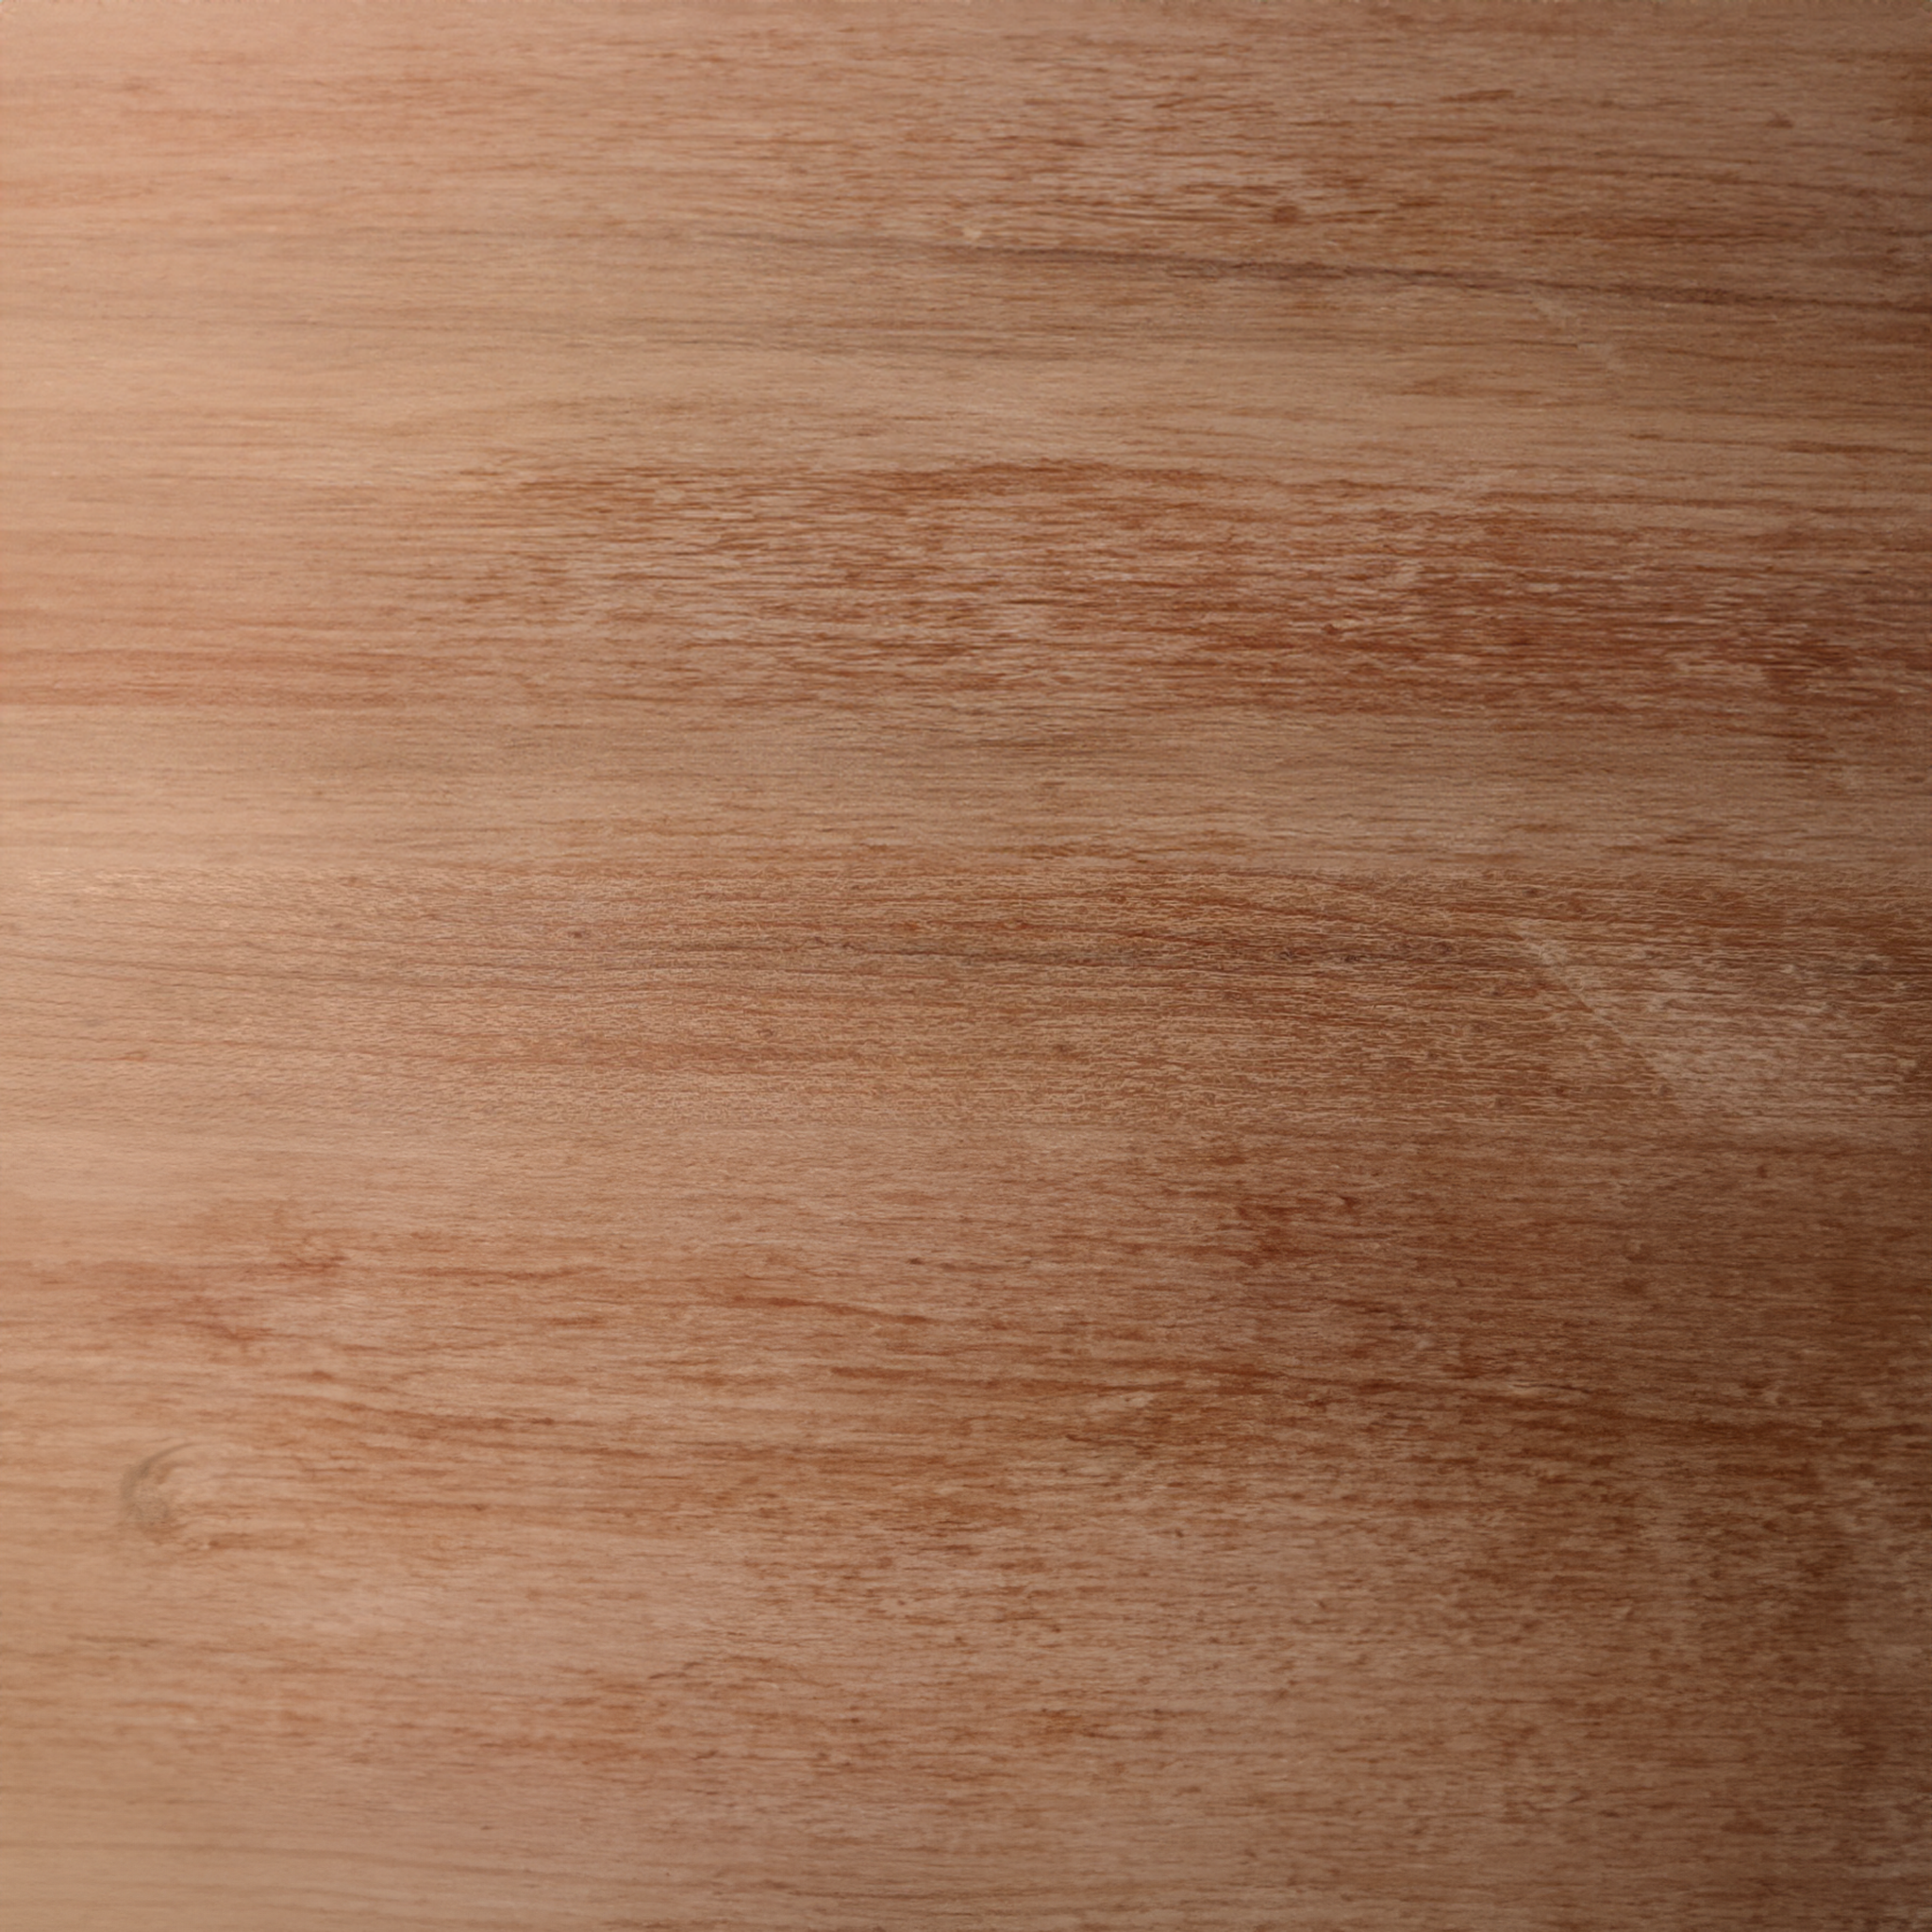 Ahorn.zucker nachhaltige Holzpflege aus 100% natürlichen Inhaltsstoffen. studio moreandless